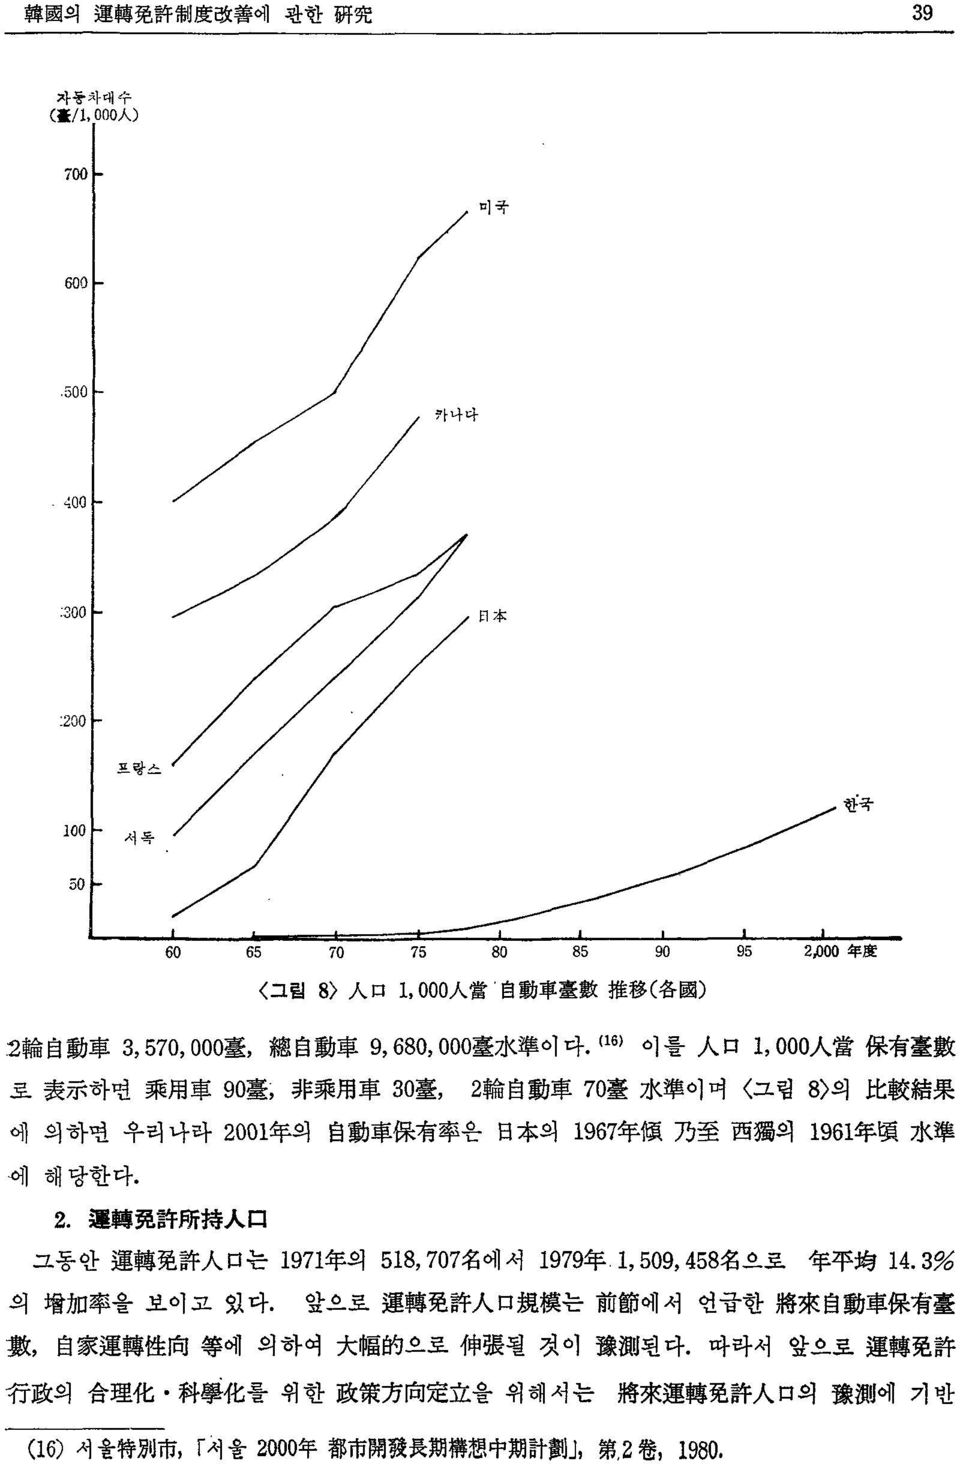 나라 2001 年 의 自 動 車 保 有 率 은 日 本 의 1967 年 碩 乃 至 西 獨 의 1961 年 煩 水 準 에 해당한다. 2. 運 轉 꿇 許 所 持 A 口 그동안 運 轉 免 許 A 口 는 1971 年 의 518, 707 名 에서 1979 年 1, 509, 458 名 으로 年 zp:월 14.3% 의 增 加 率 을 보이고 있다.